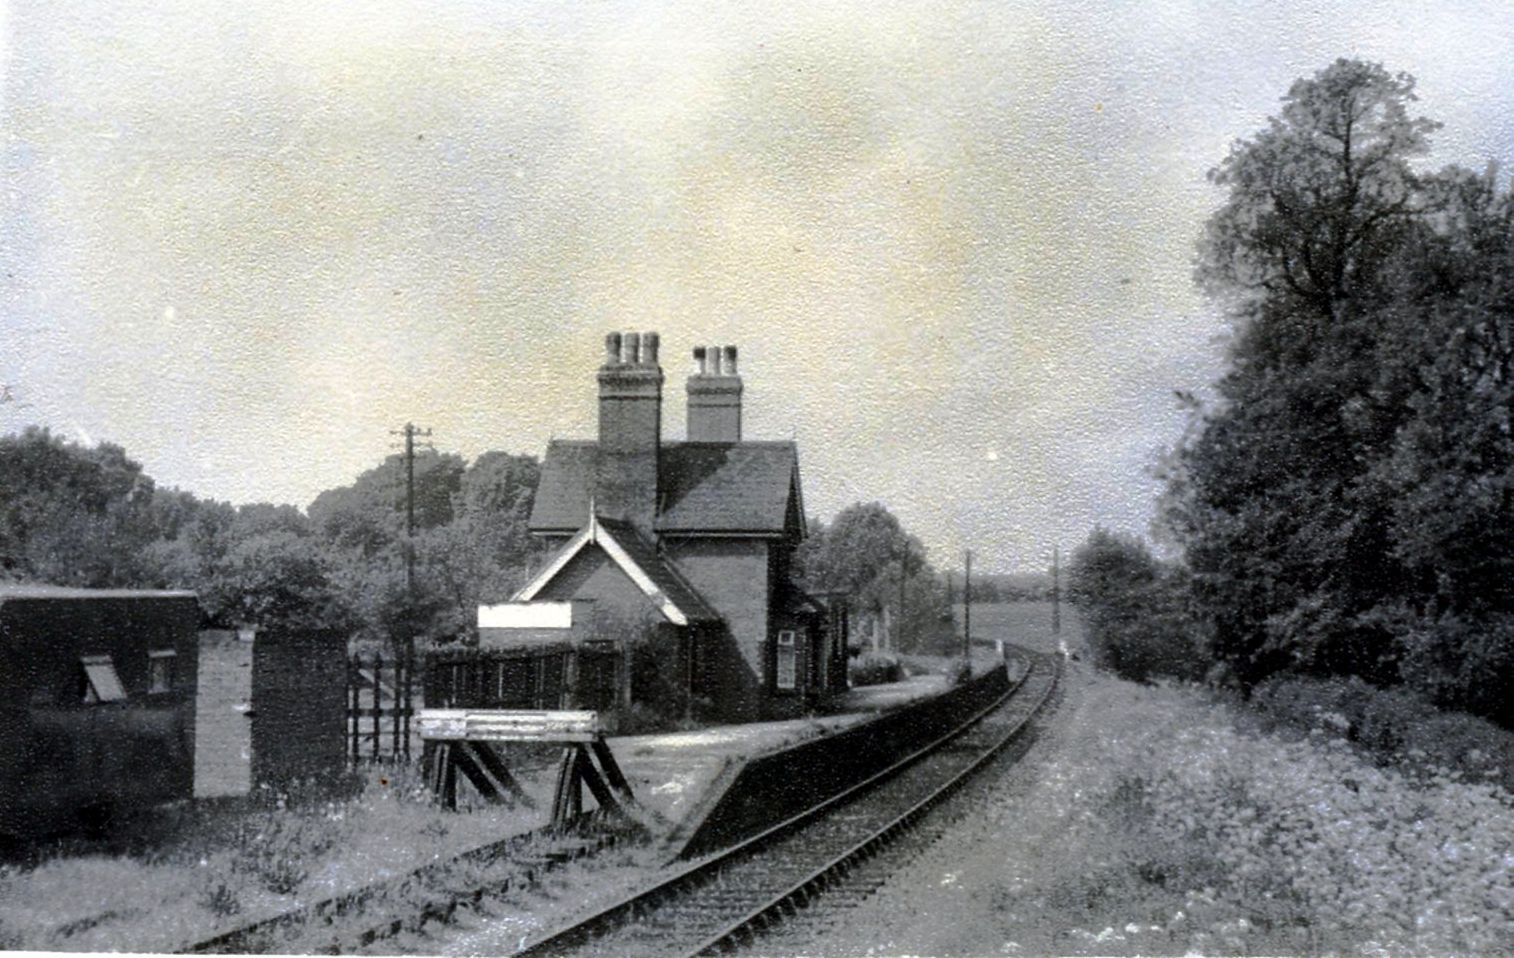 Hertingfordbury railway station